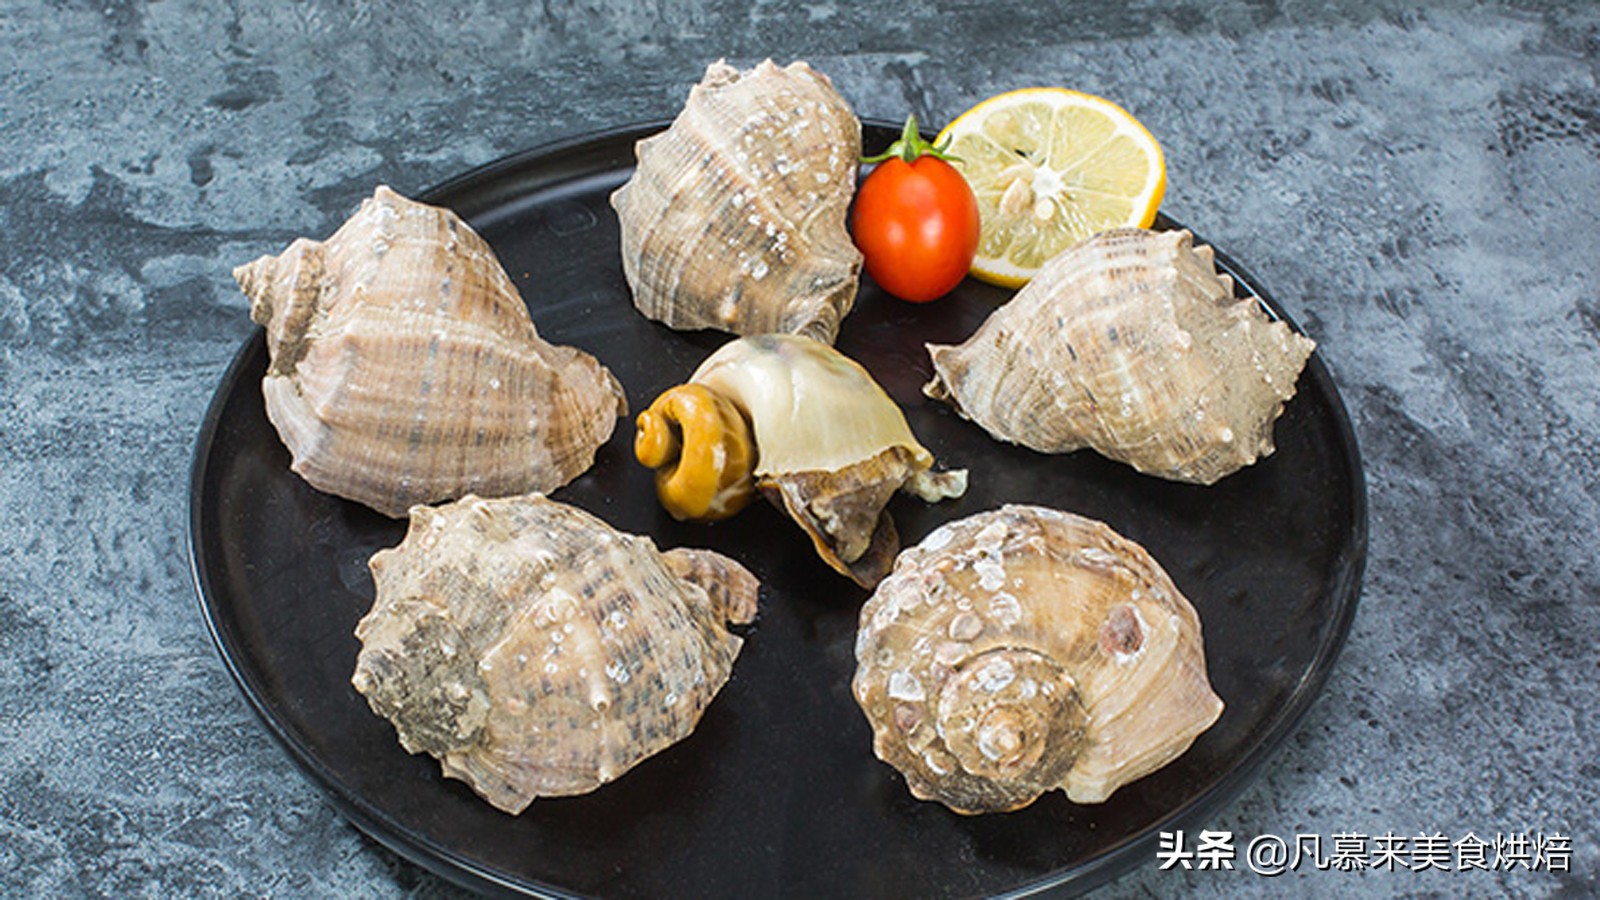 大海螺的正确吃法、大海螺鉴别鲜活的方法、大海螺的四种做法